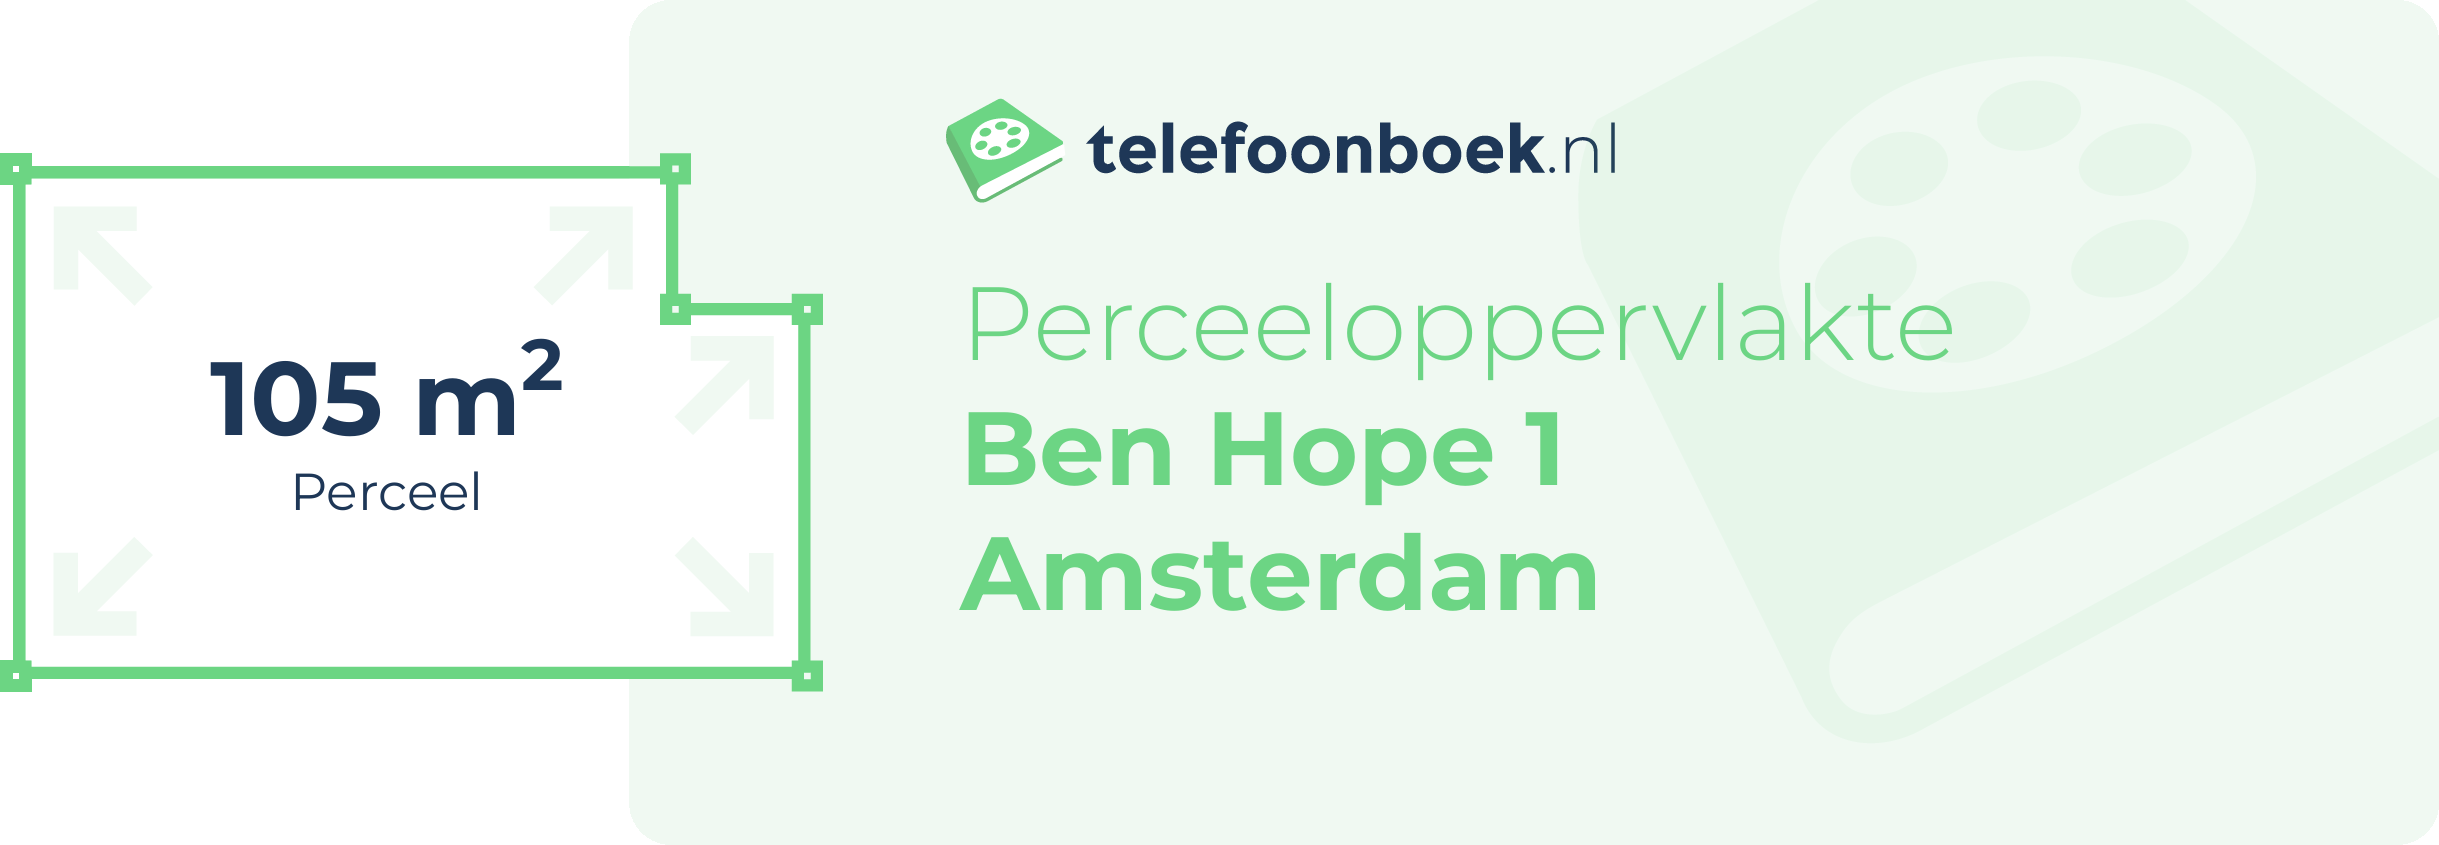 Perceeloppervlakte Ben Hope 1 Amsterdam